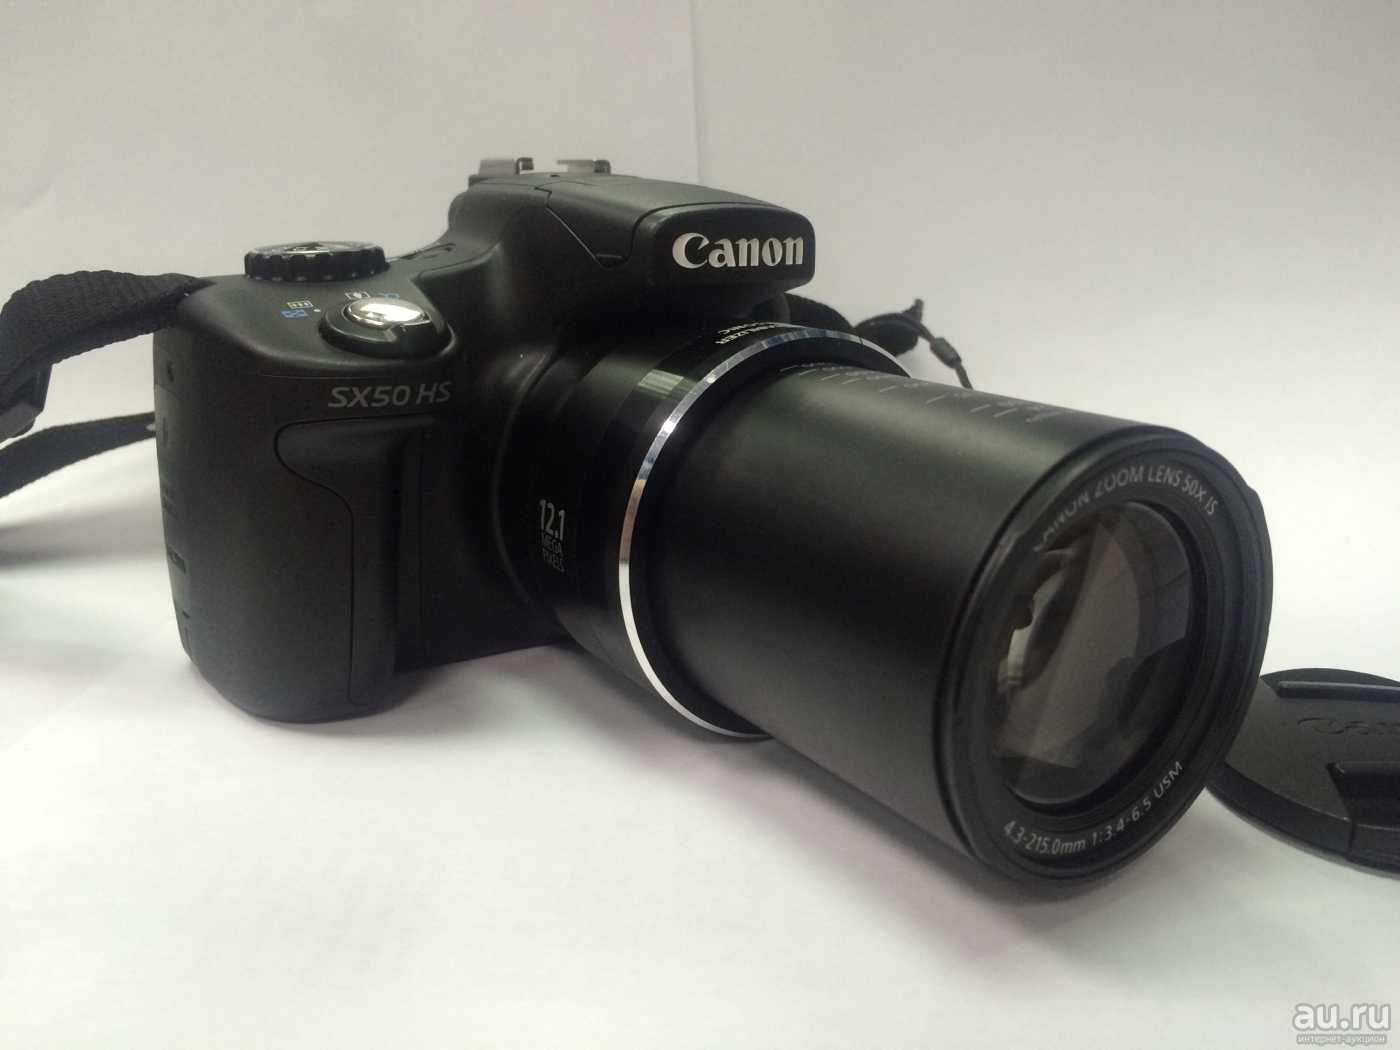 Canon powershot sx50 hs купить по акционной цене , отзывы и обзоры.